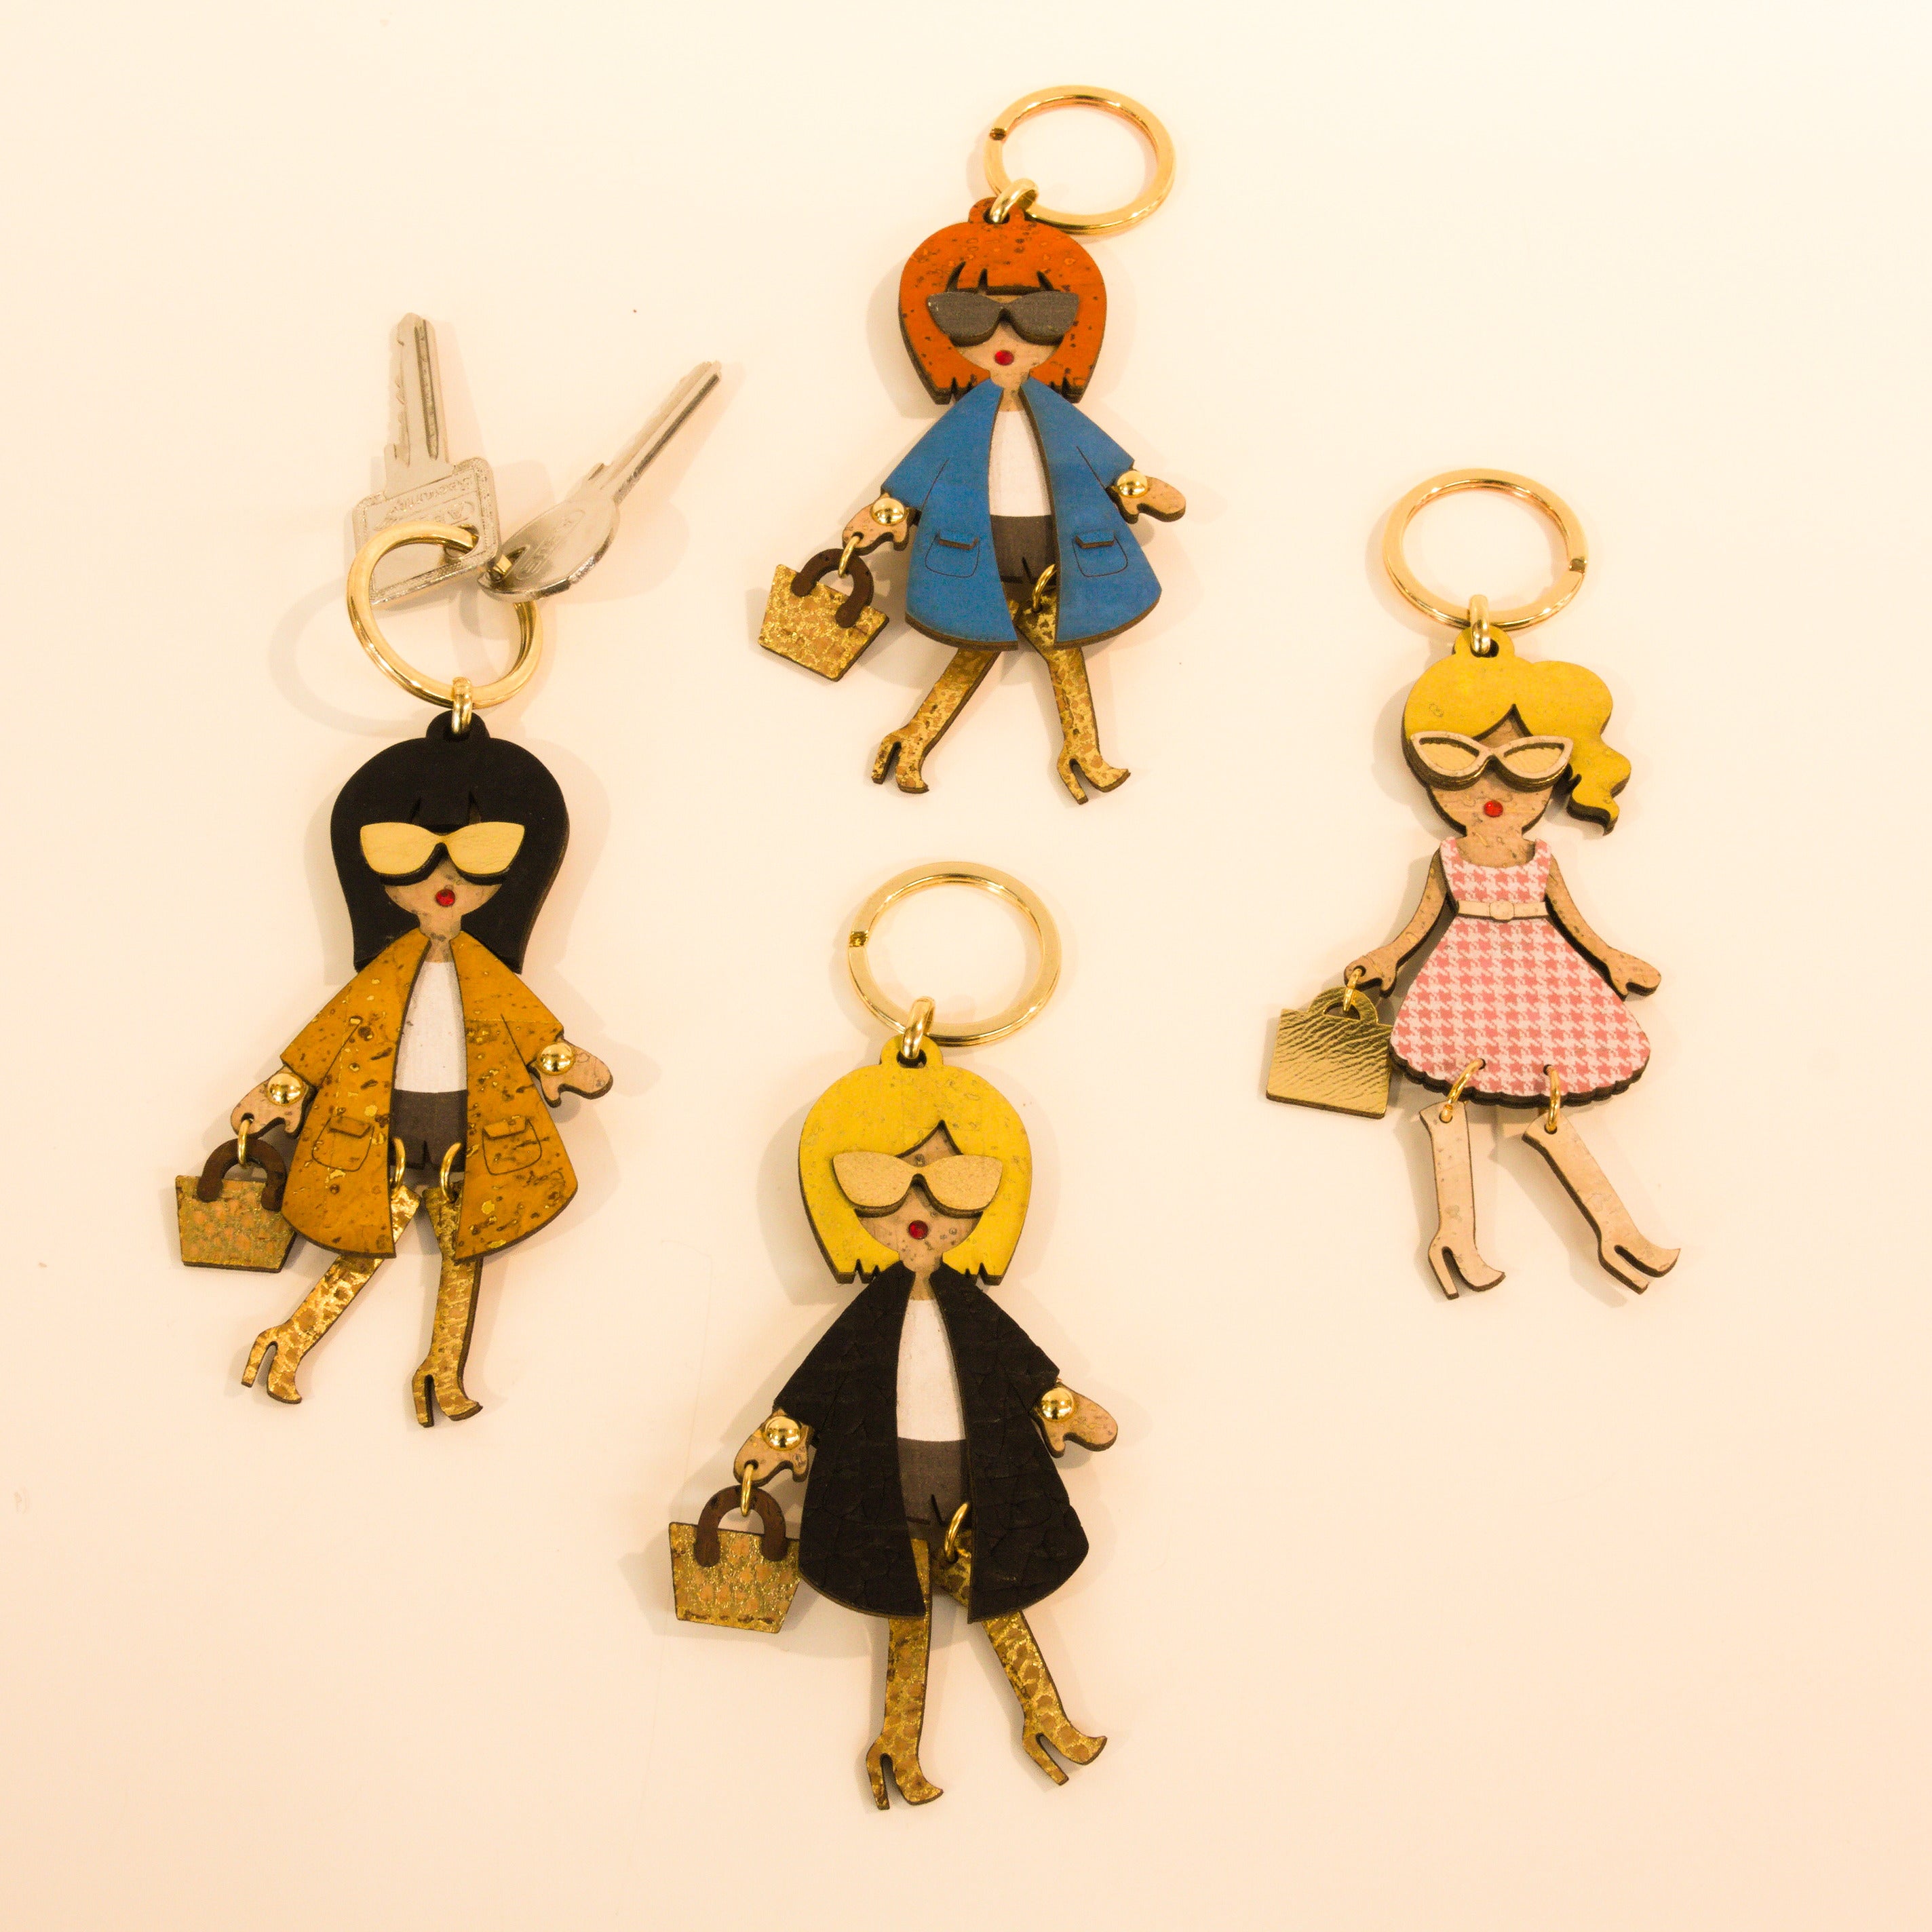 Kork Schlüsselanhänger * peppige Figuren * Anhänger für Taschen * Geschenk für Frauen * handmade in Portugal * Marke Artipel